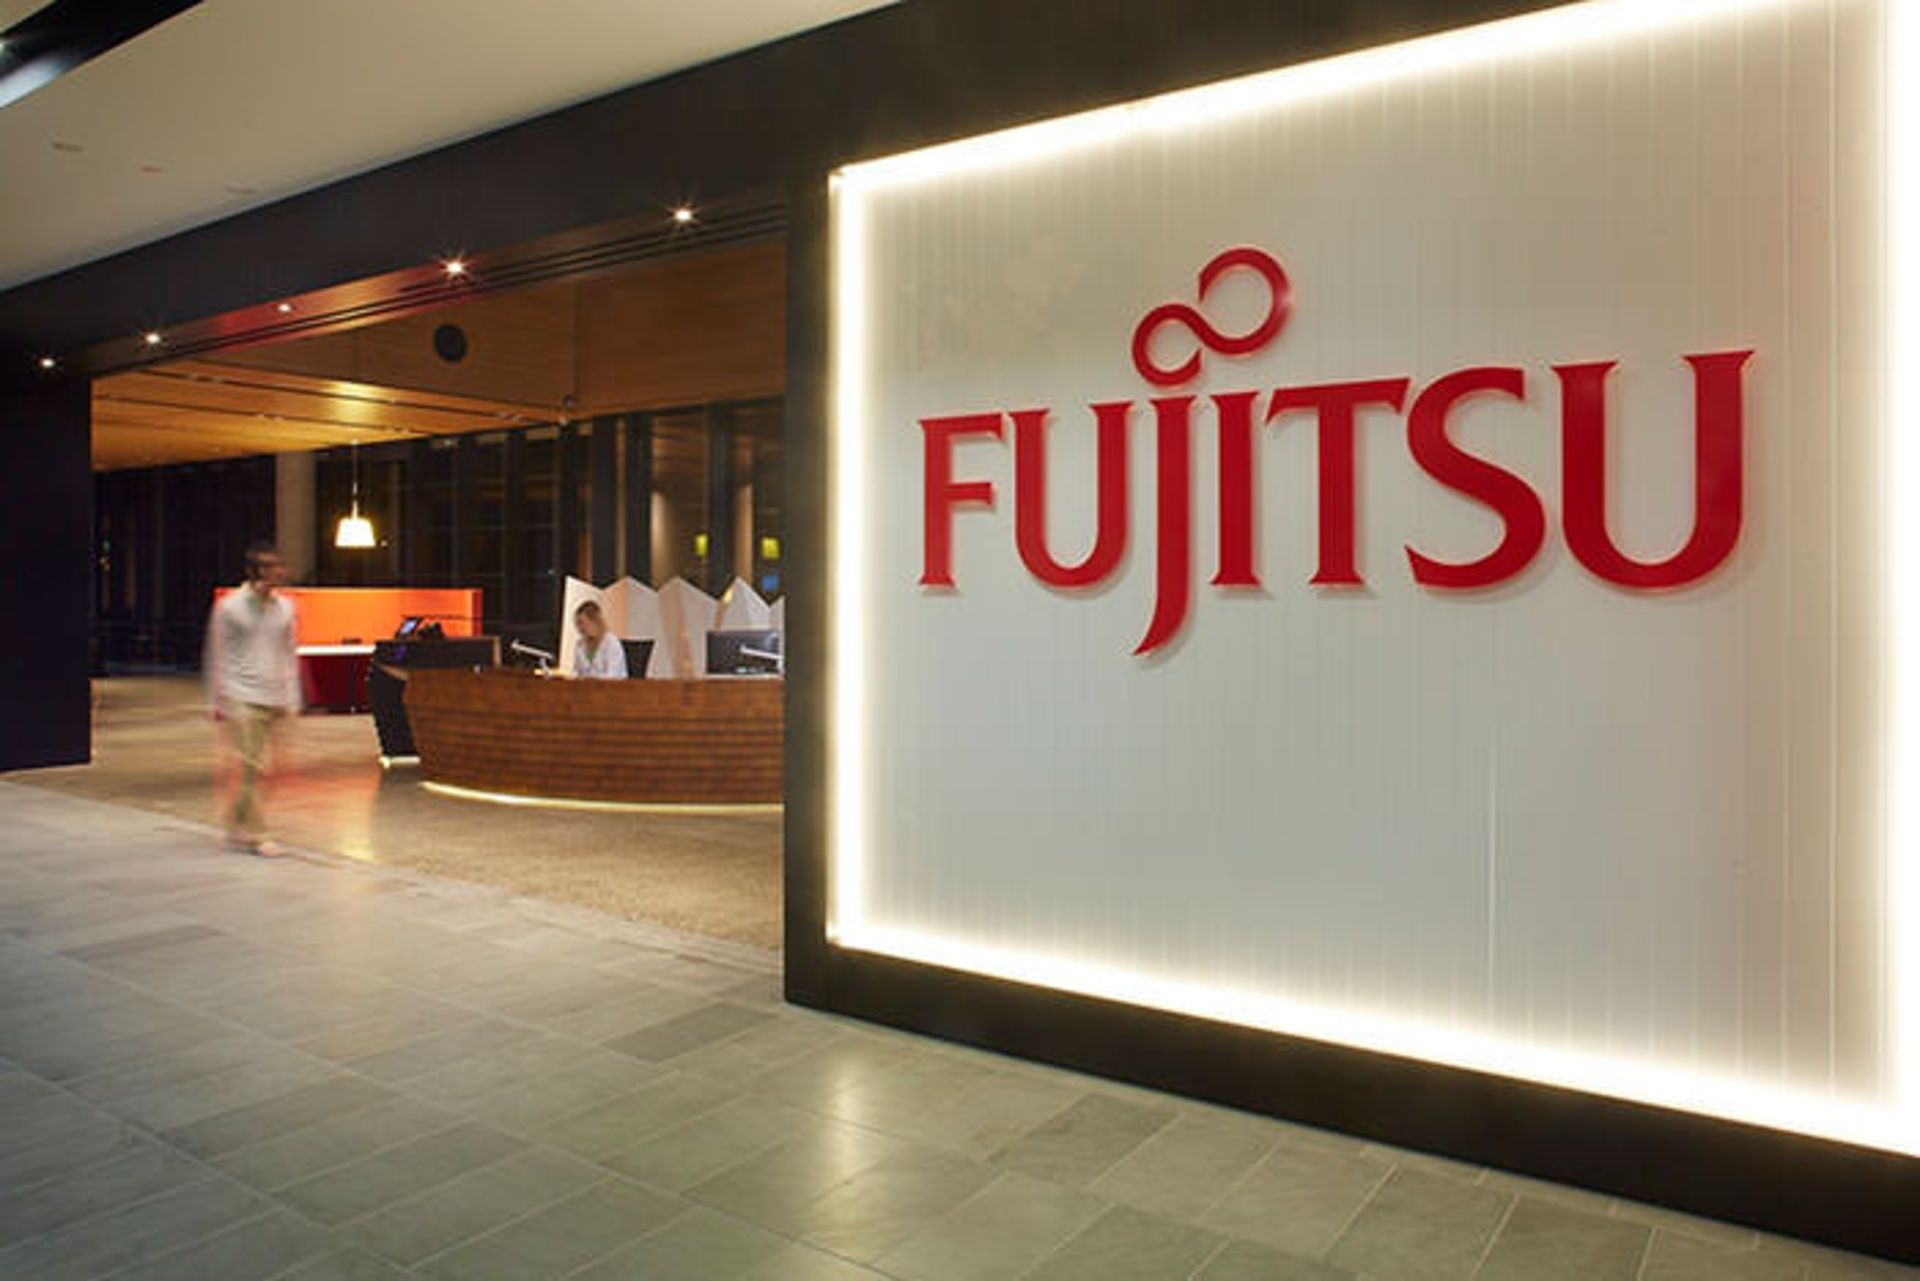 مرجع متخصصين ايران فوجيتسو / Fujitsu